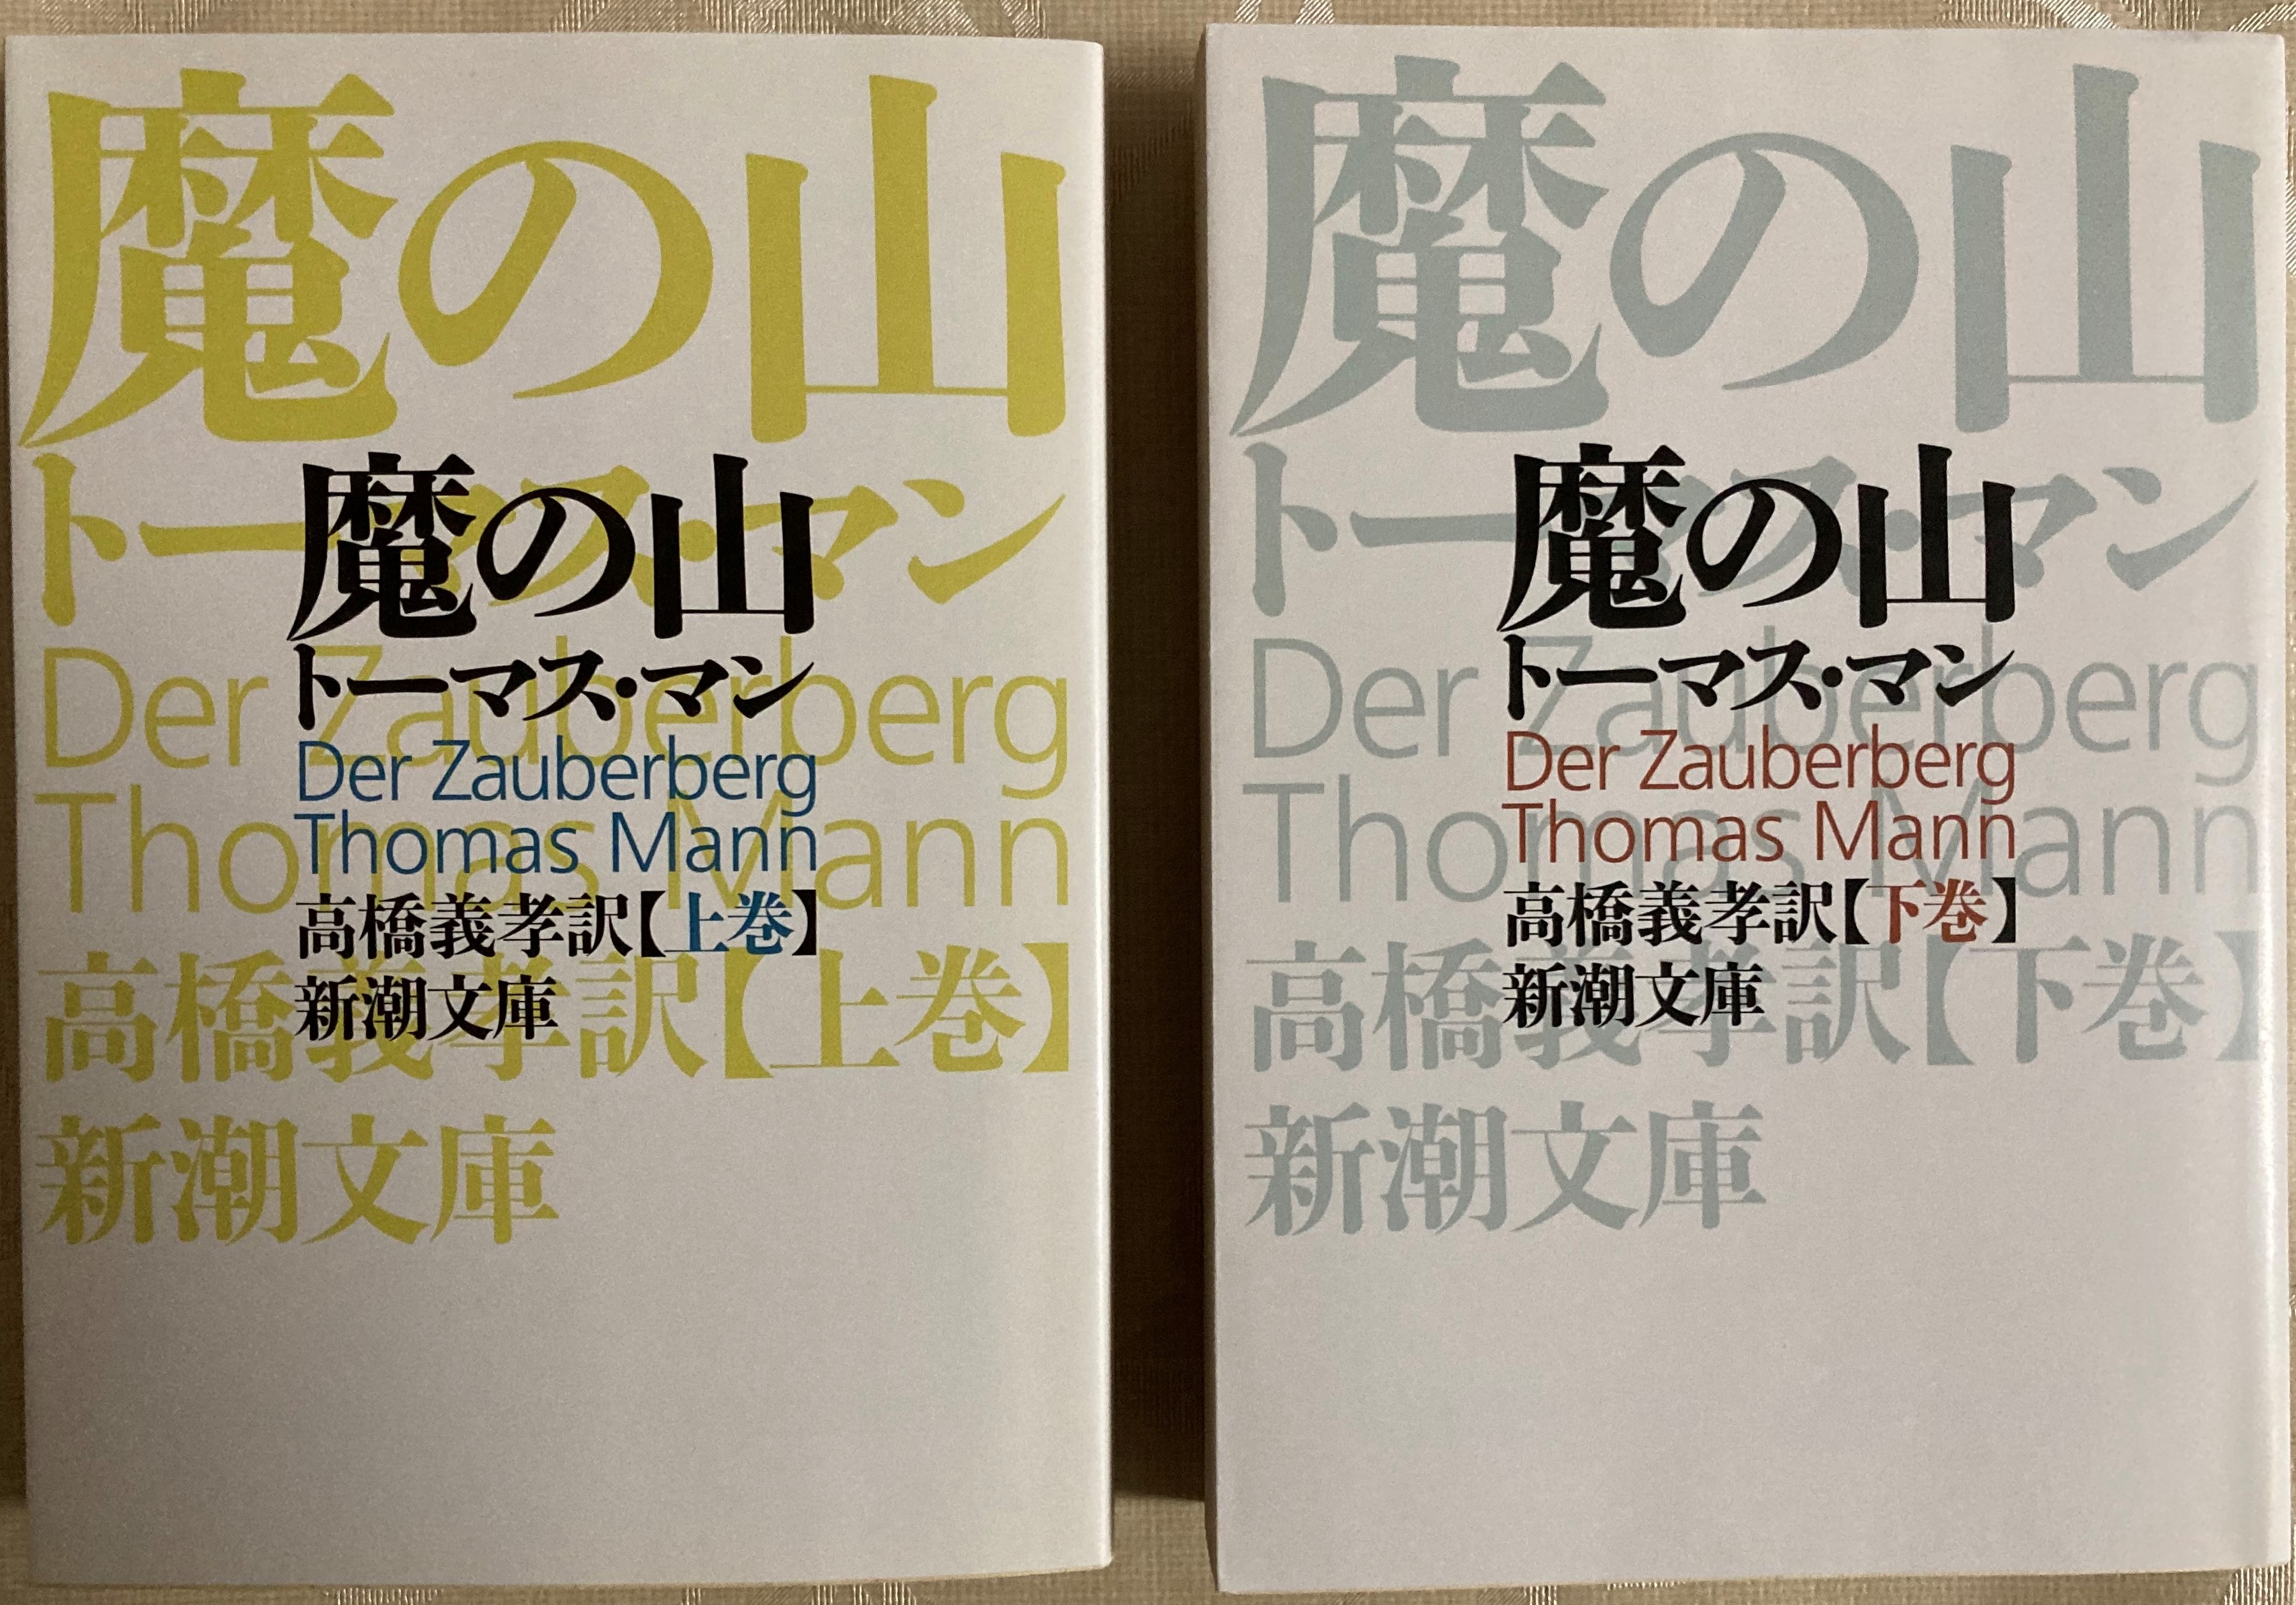 トーマス マン 魔の山 世紀至高の文学を遂に読了 最高の文学作品に酔いしれる幸福感 Atsuatsutakechan S Blog